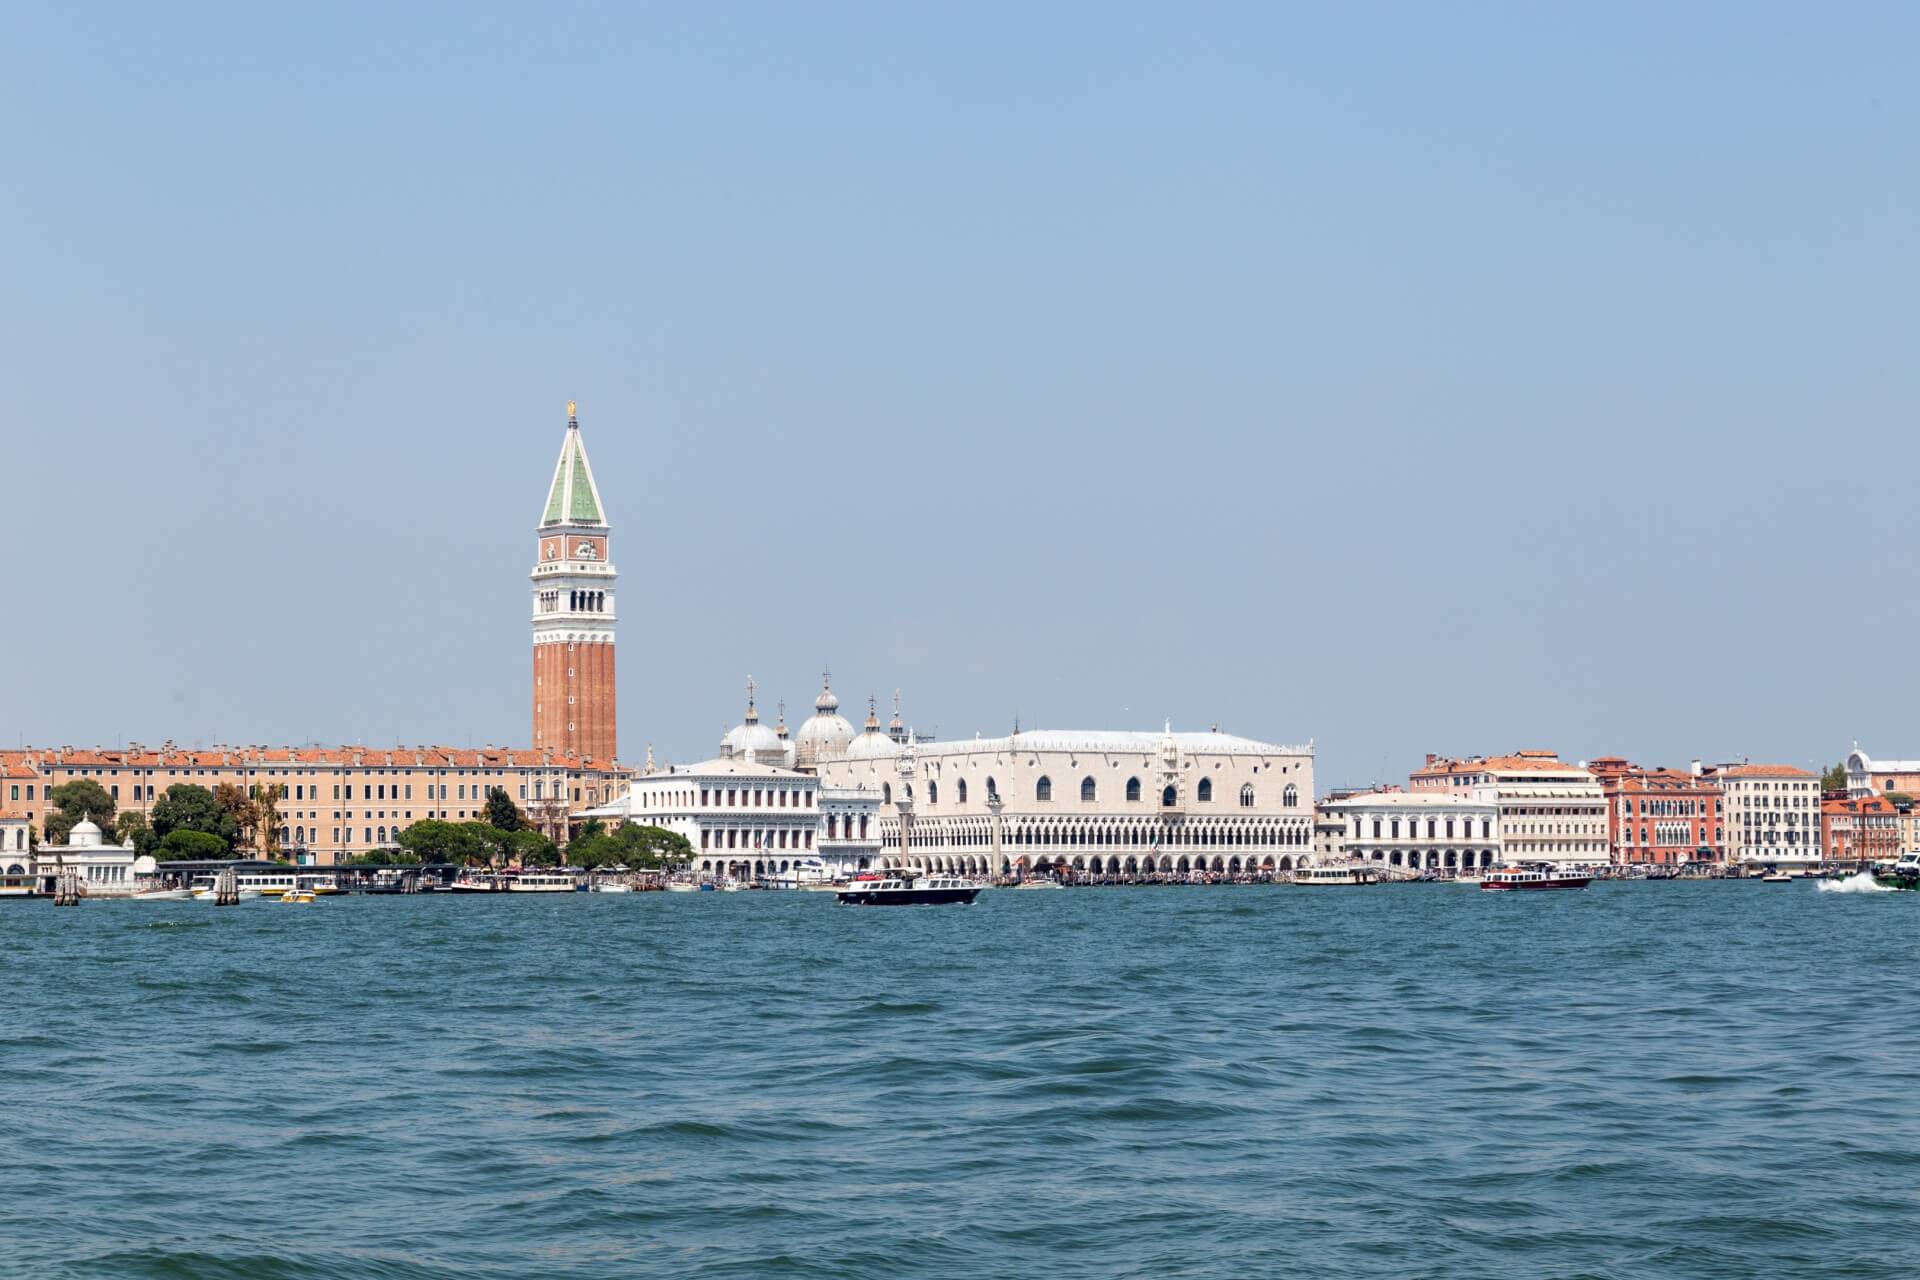 Venedig von Giudecca aus gesehen